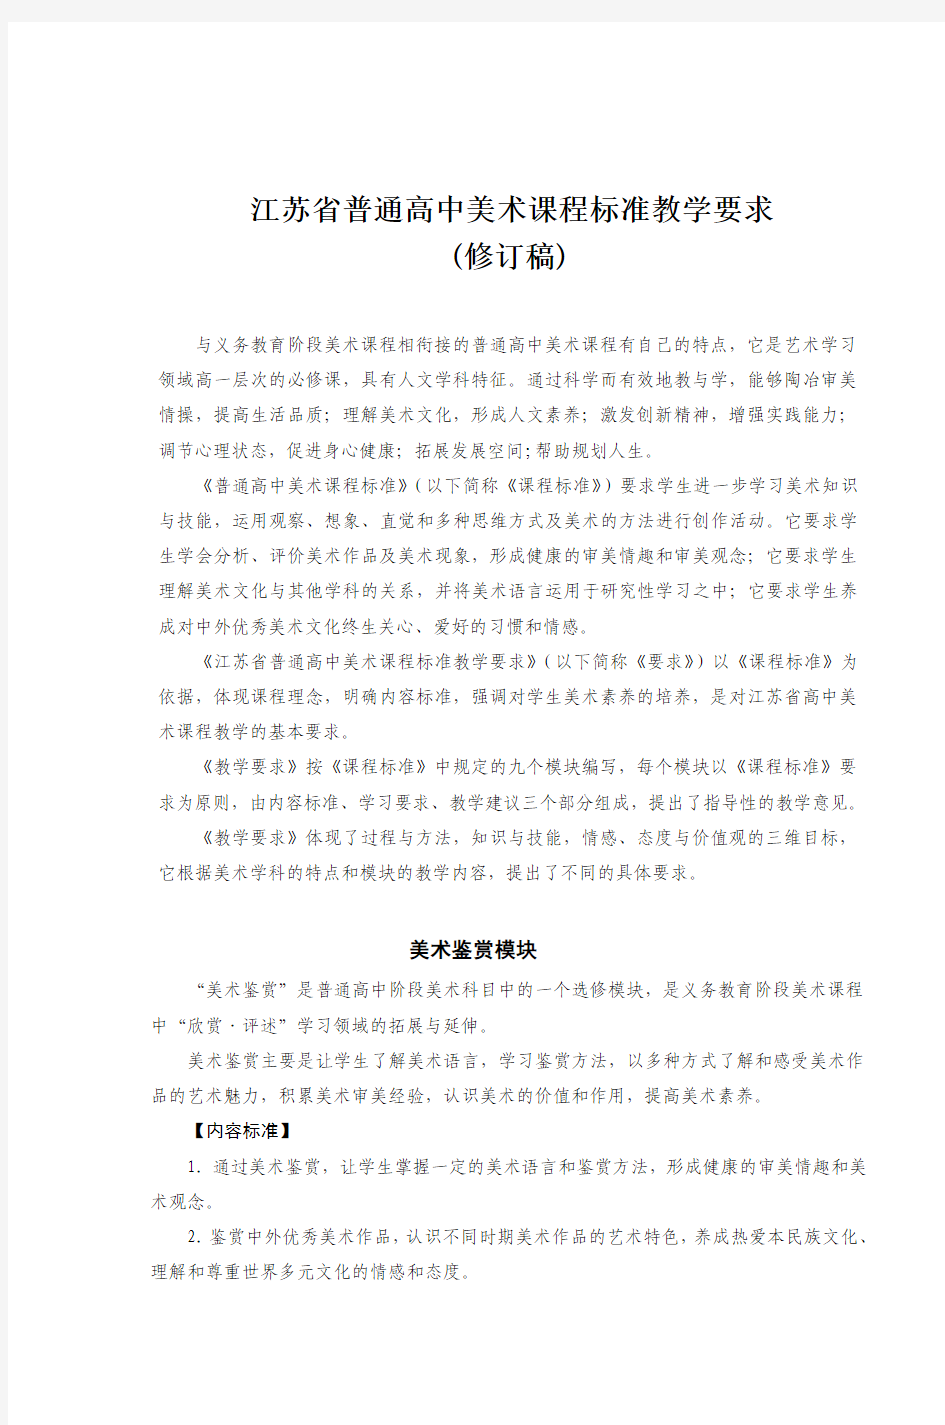 江苏省普通高中美术课程标准教学要求